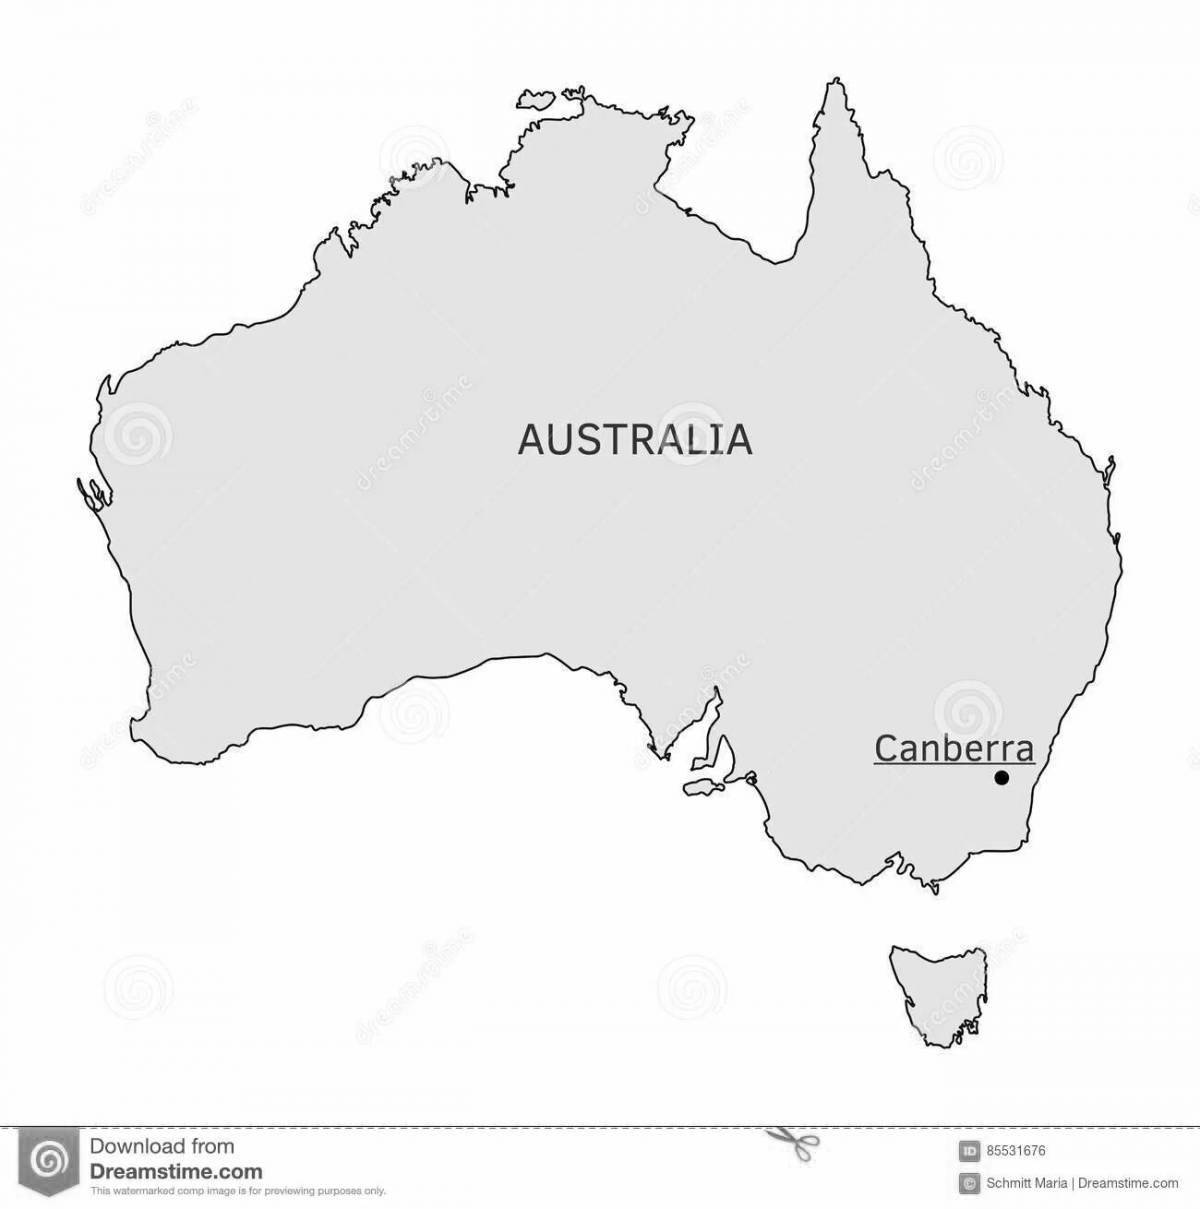 Coloring page unique australia map